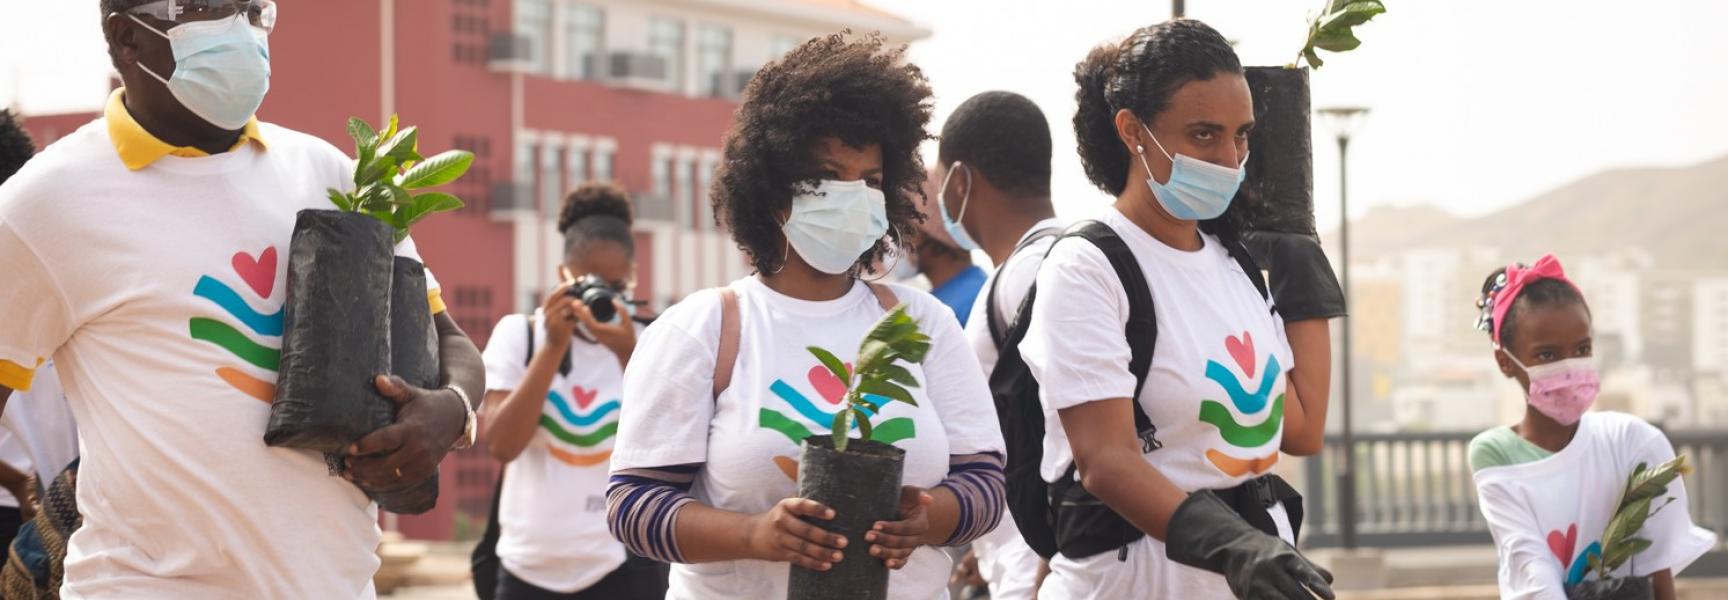 Des jeunes s'apprêtent à planter des arbres au Cabo Verde